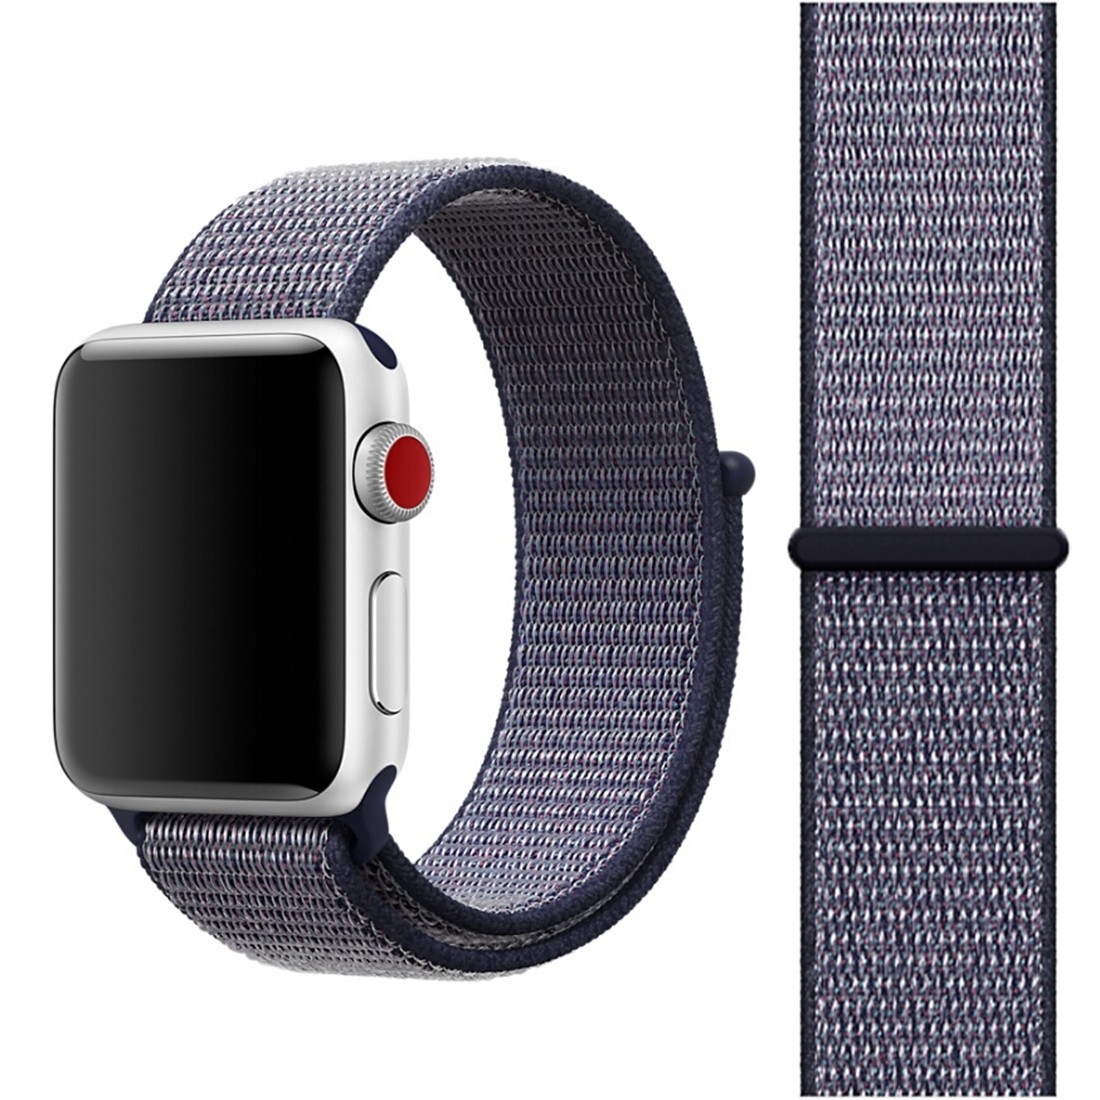 Ремешки apple watch sport. Ремешок для Apple watch Ultra. Ремешки для Эппл вотч. Ремешки на эпл вотч 44мм. Ремешок для Apple watch 44mm браслет.